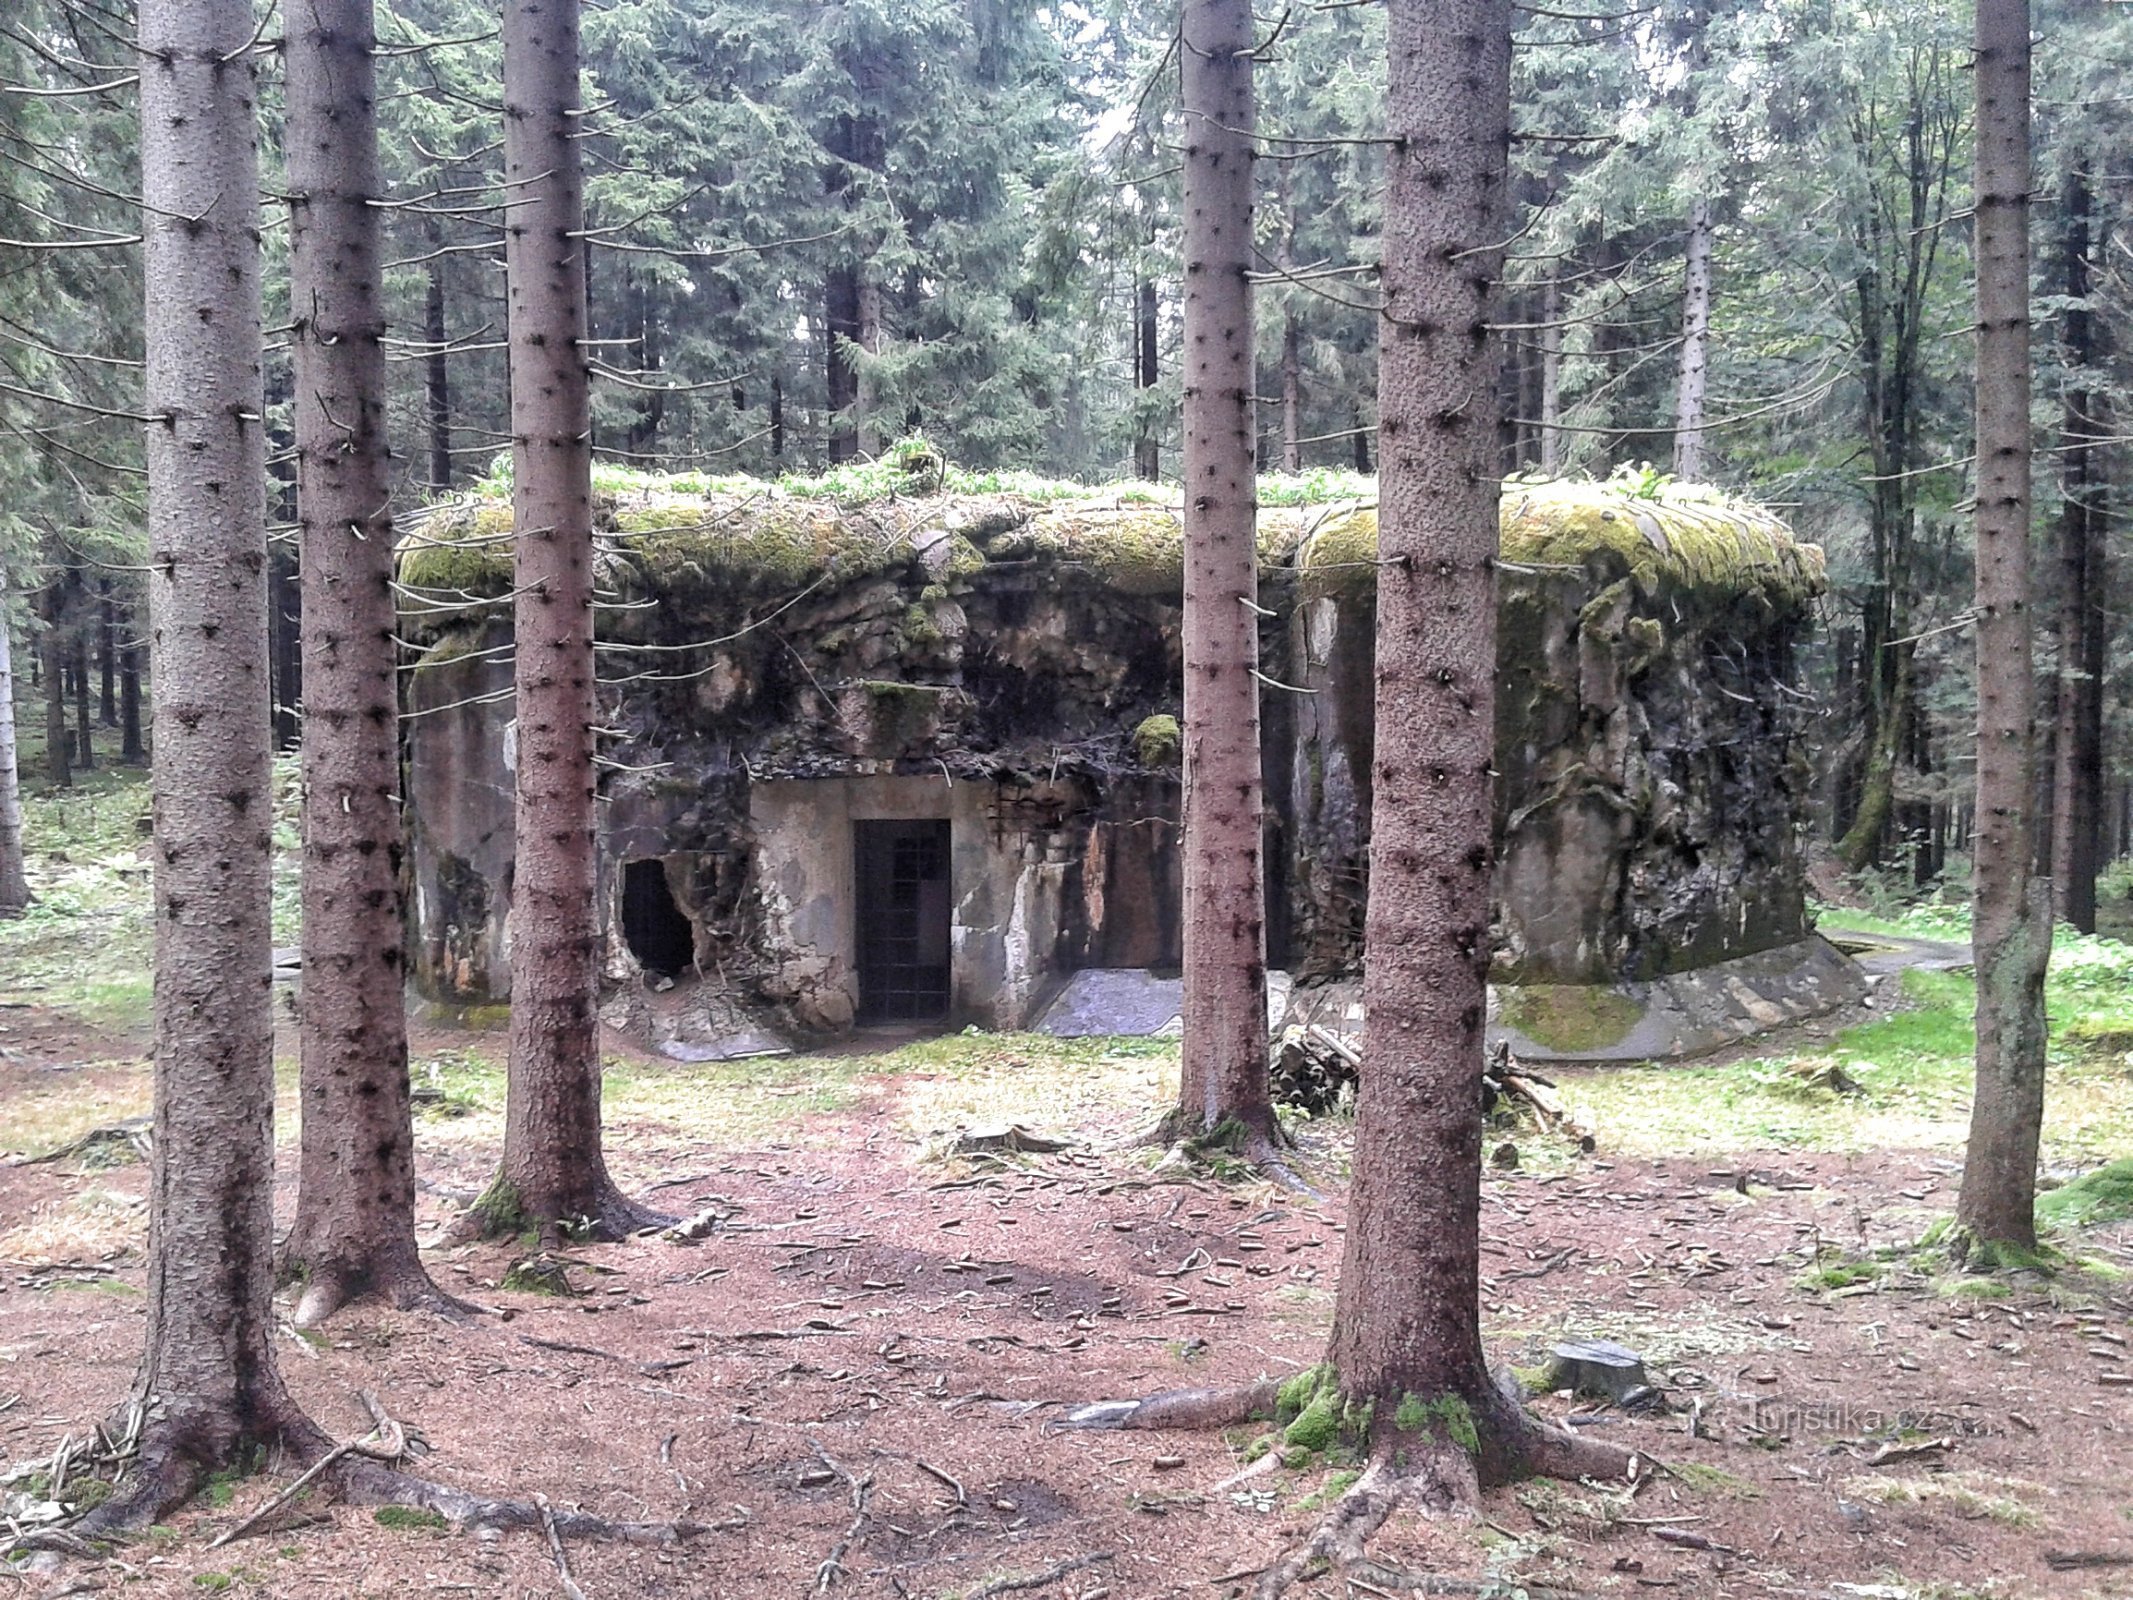 Log cabin "U Obrazek".